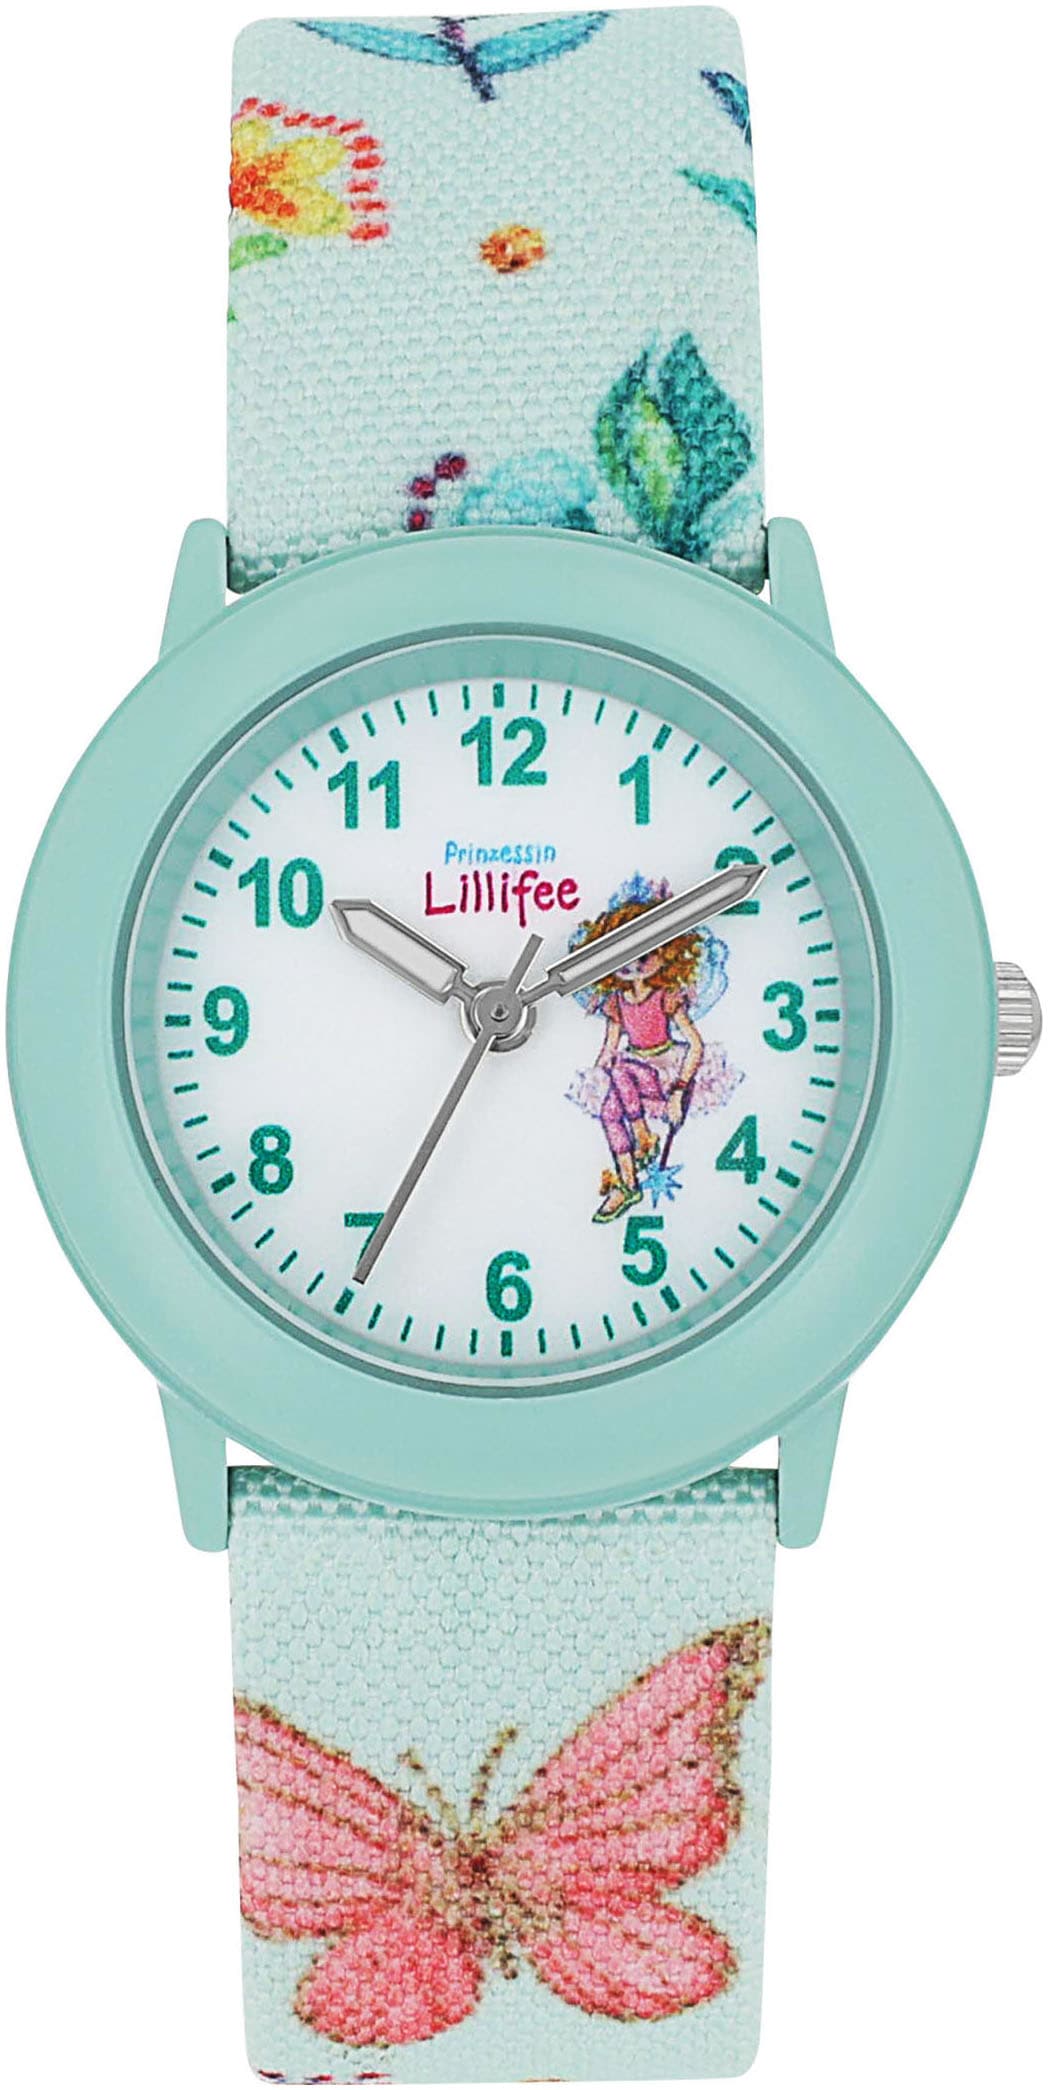 Prinzessin Lillifee Quarzuhr, Armbanduhr, Kinderuhr, Mädchenuhr, ideal auch als Geschenk